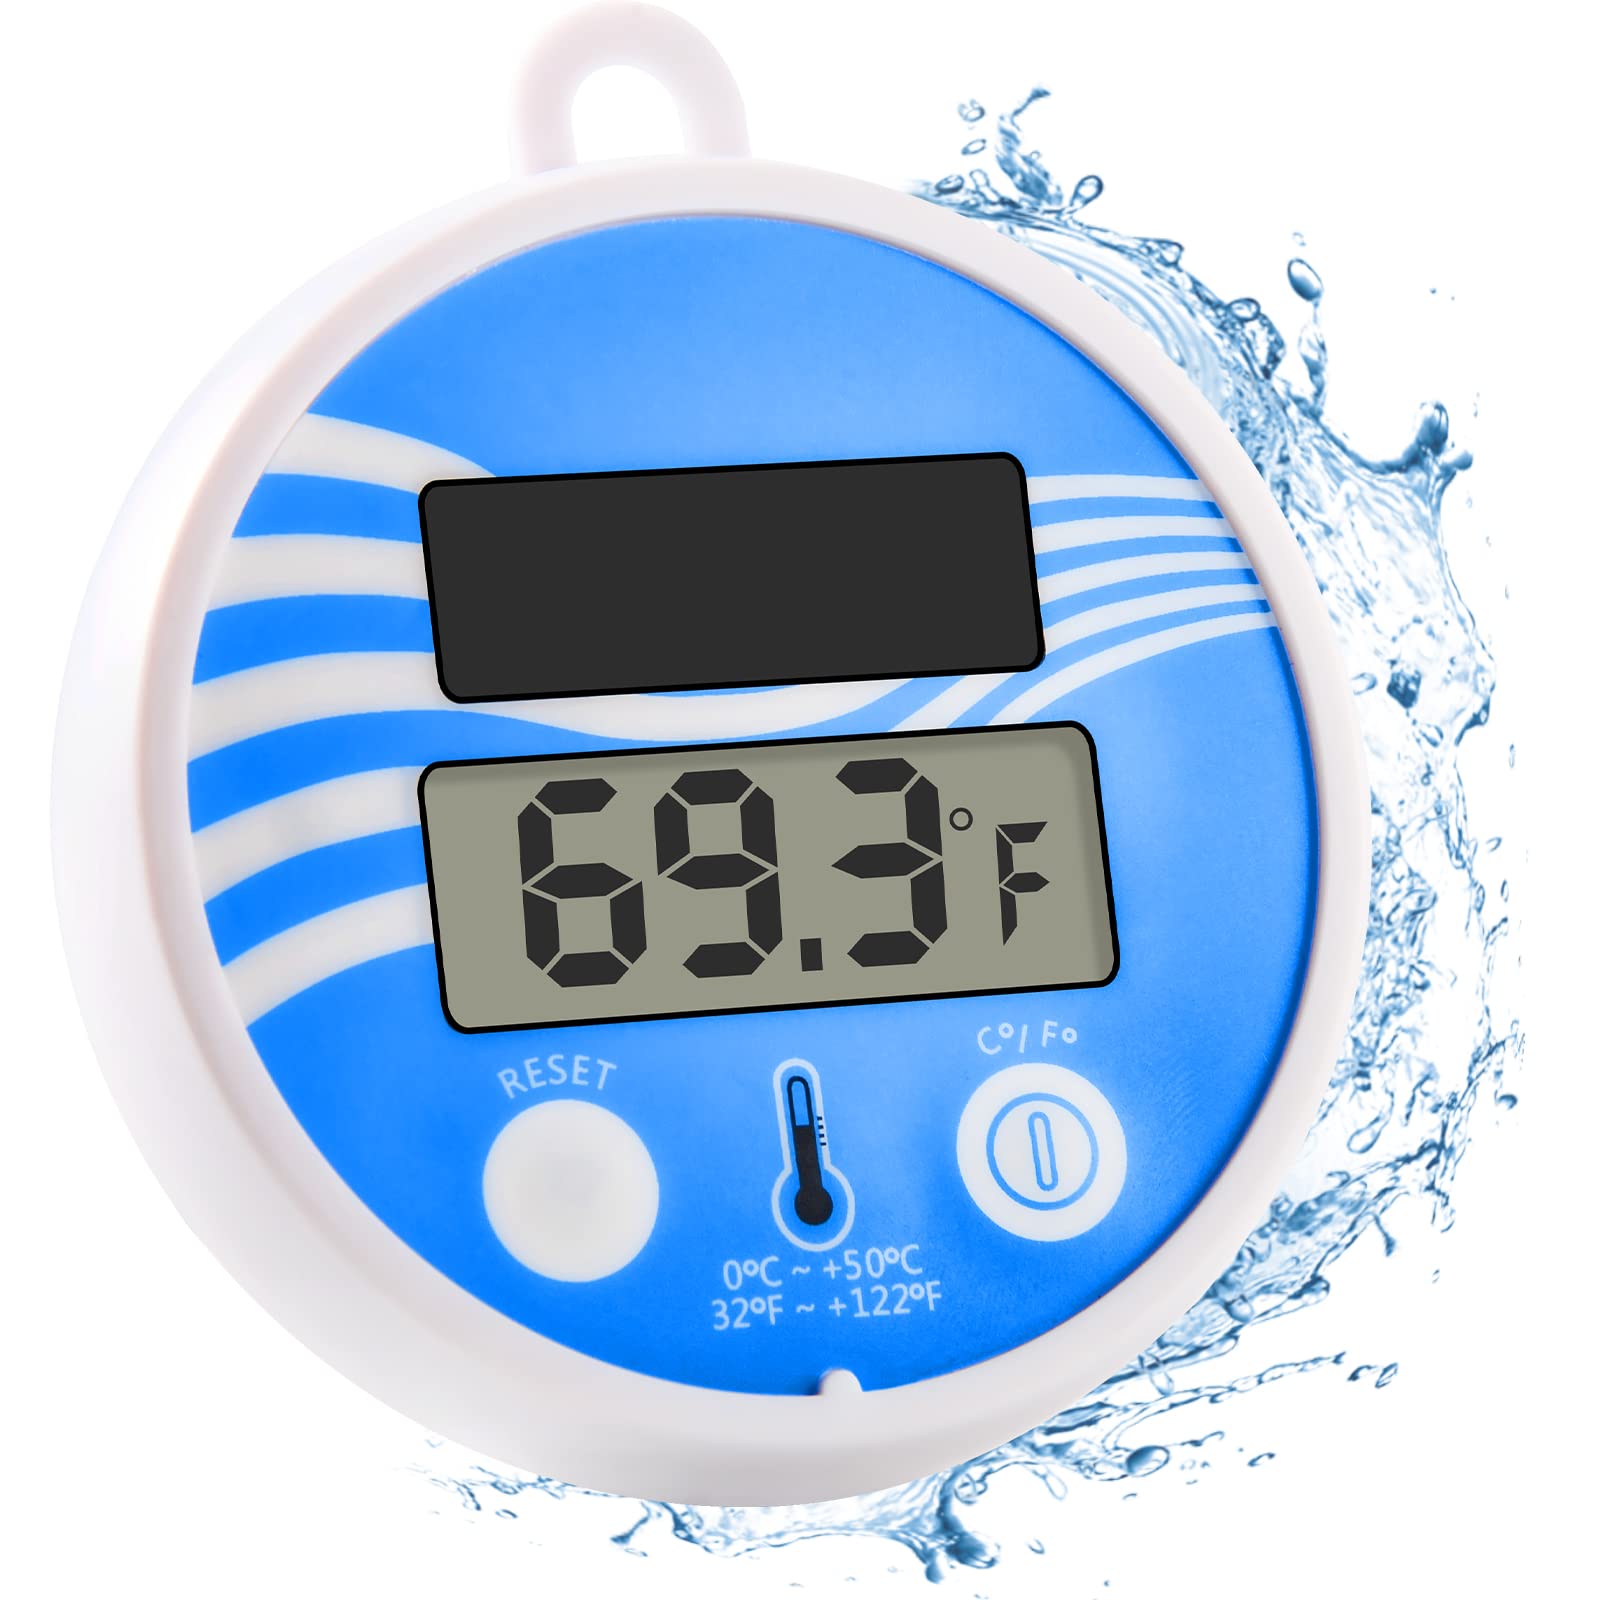 Thermomètres pour mesurer la température de l'eau de piscine